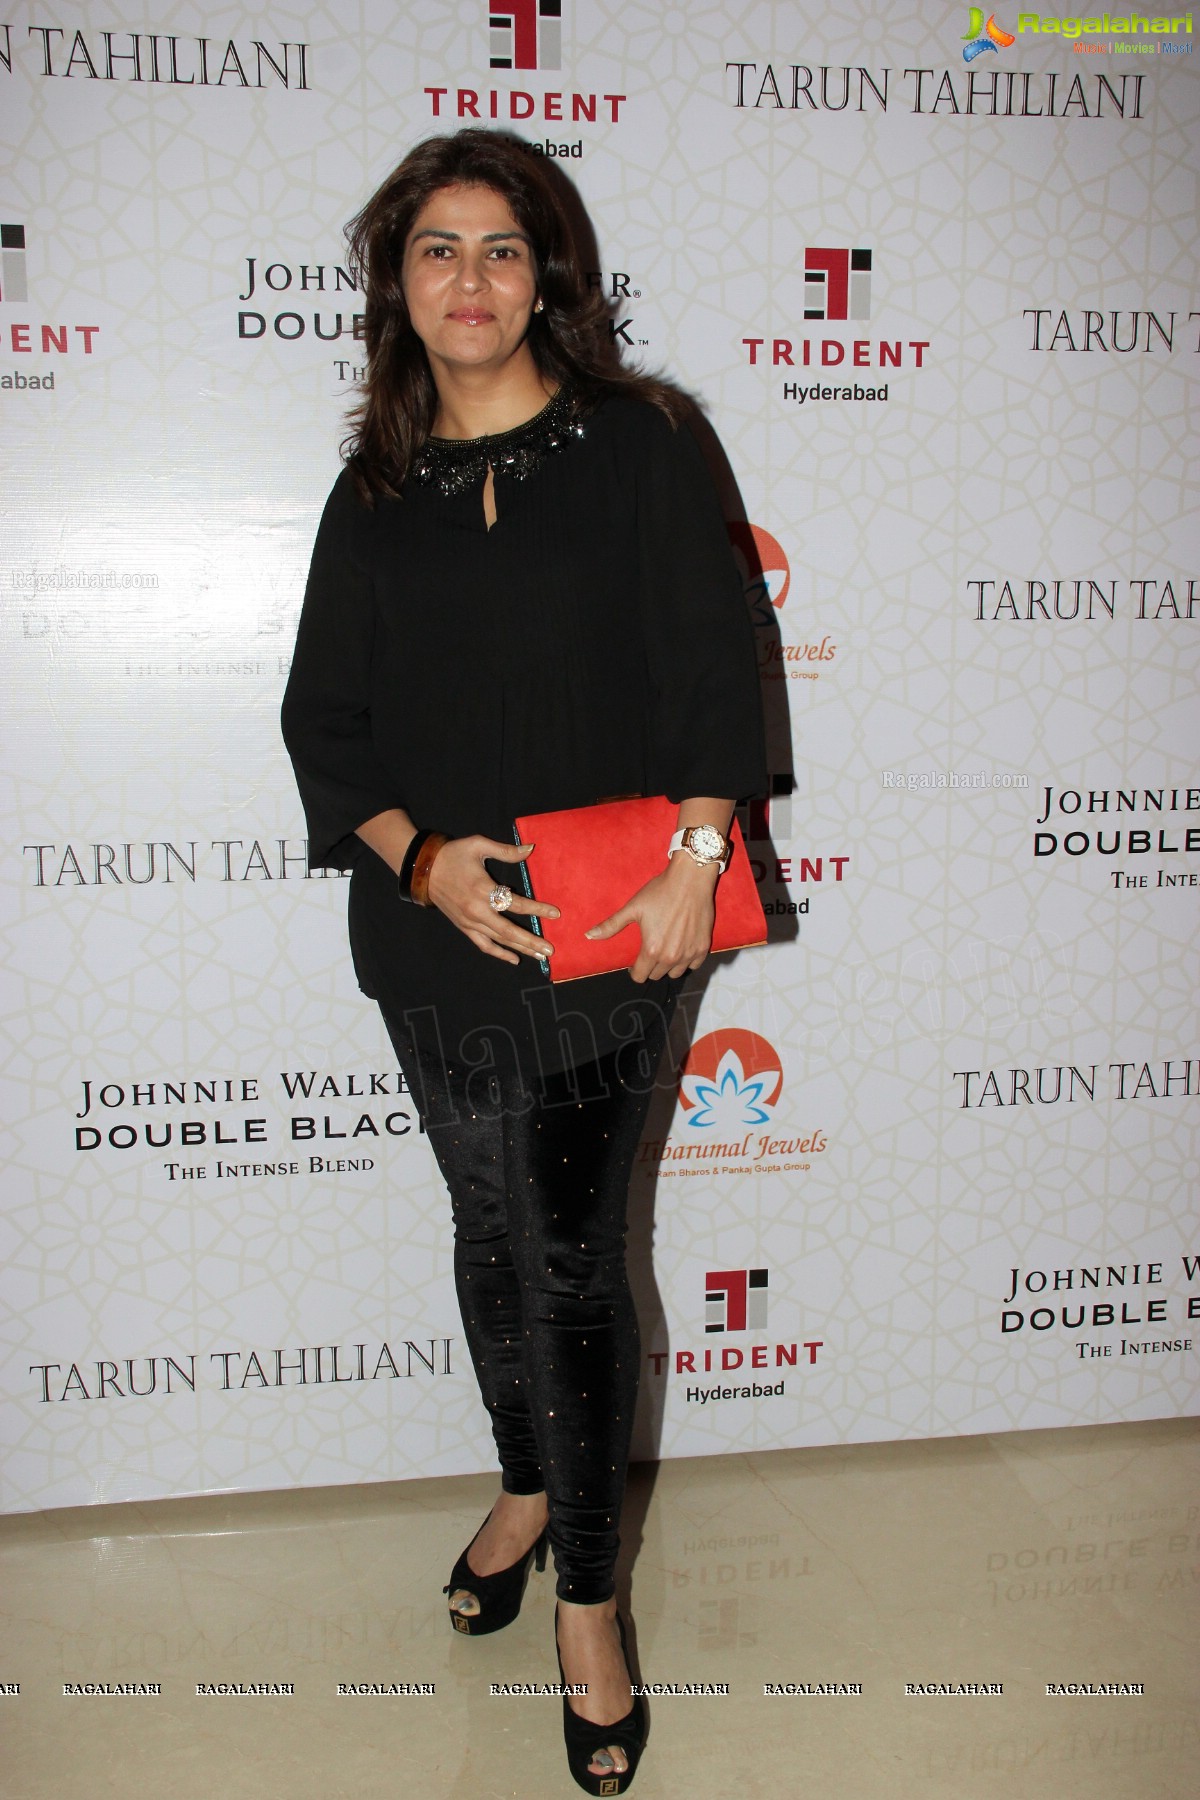 Tarun Tahiliani Autumn Winter Collection 2013 -14 at Trident, Hyderabad